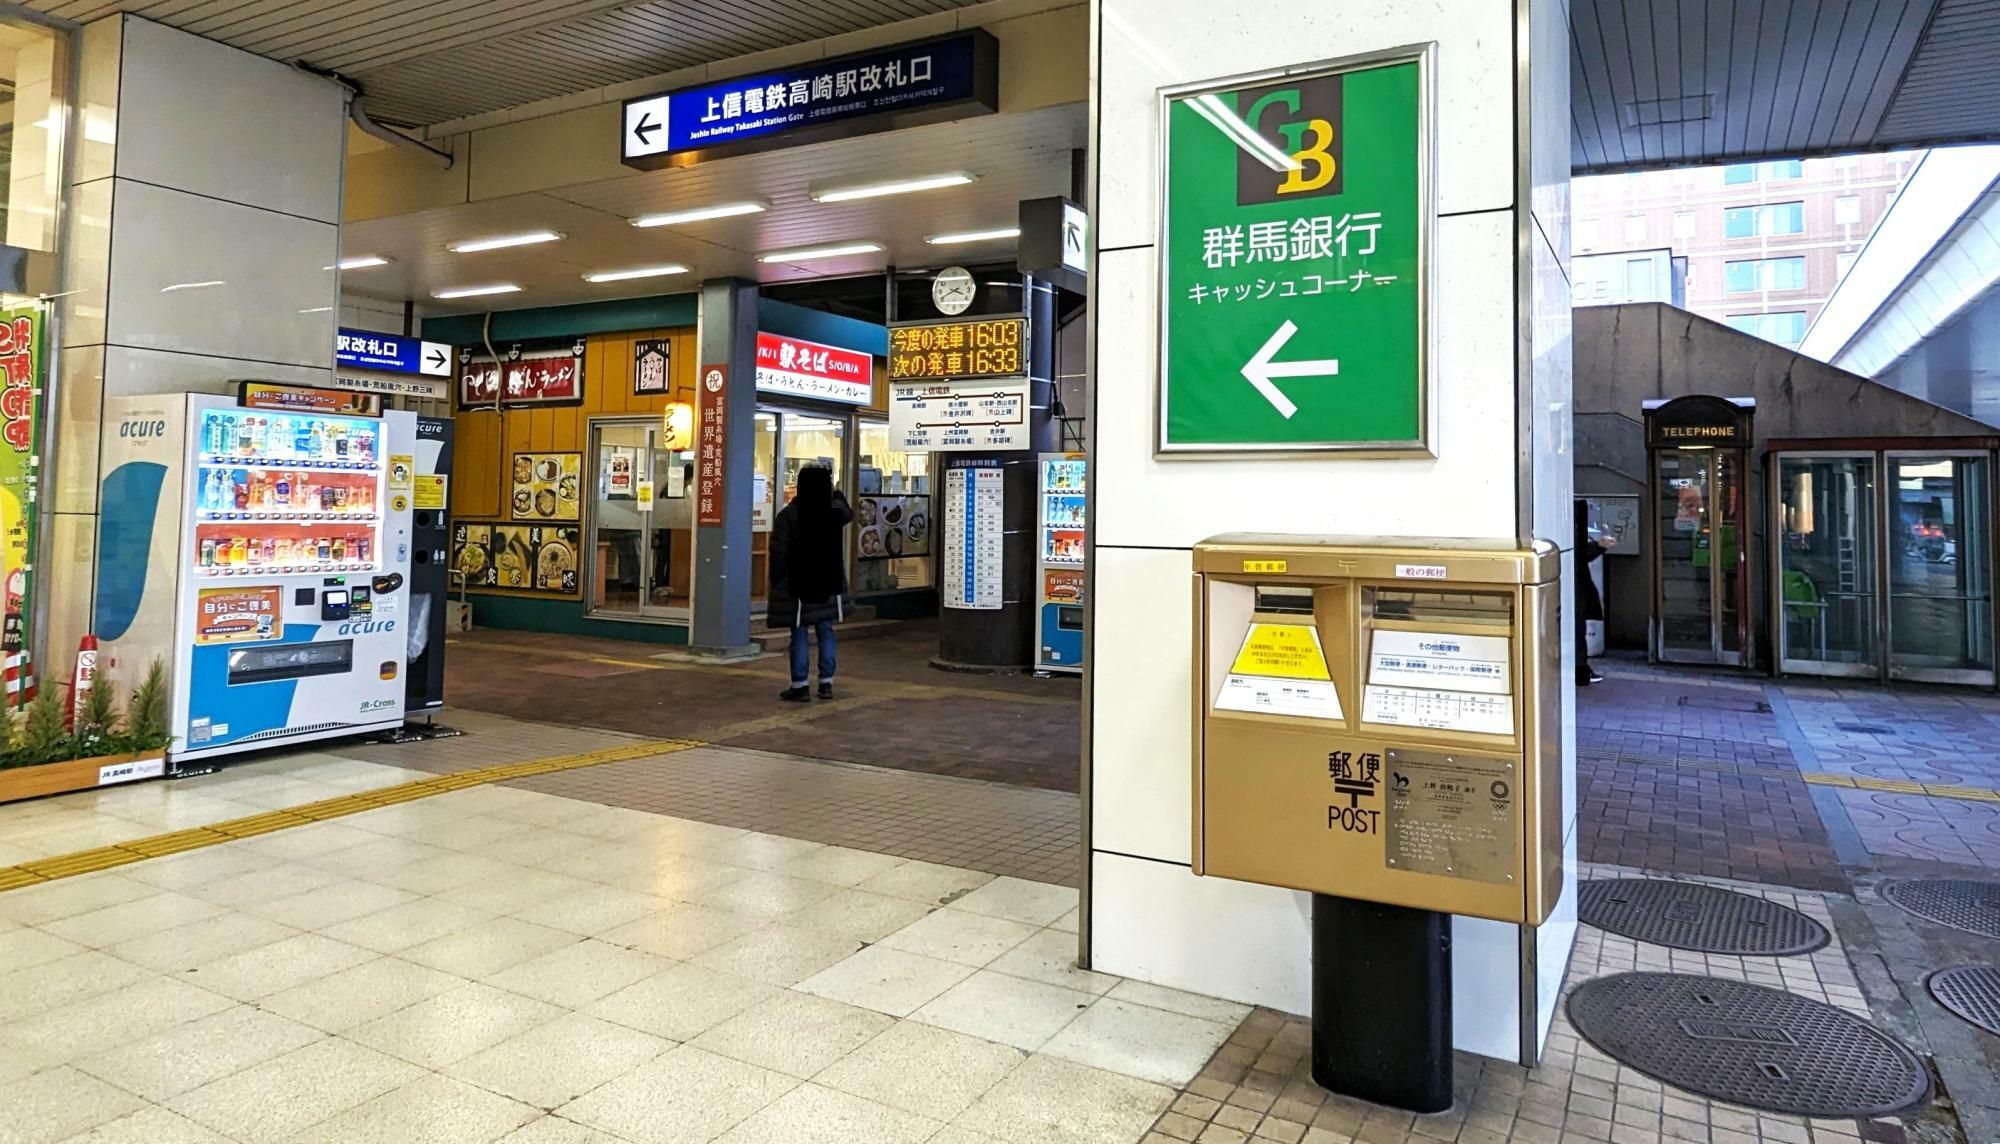 上信電鉄 高崎駅改札口入口付近